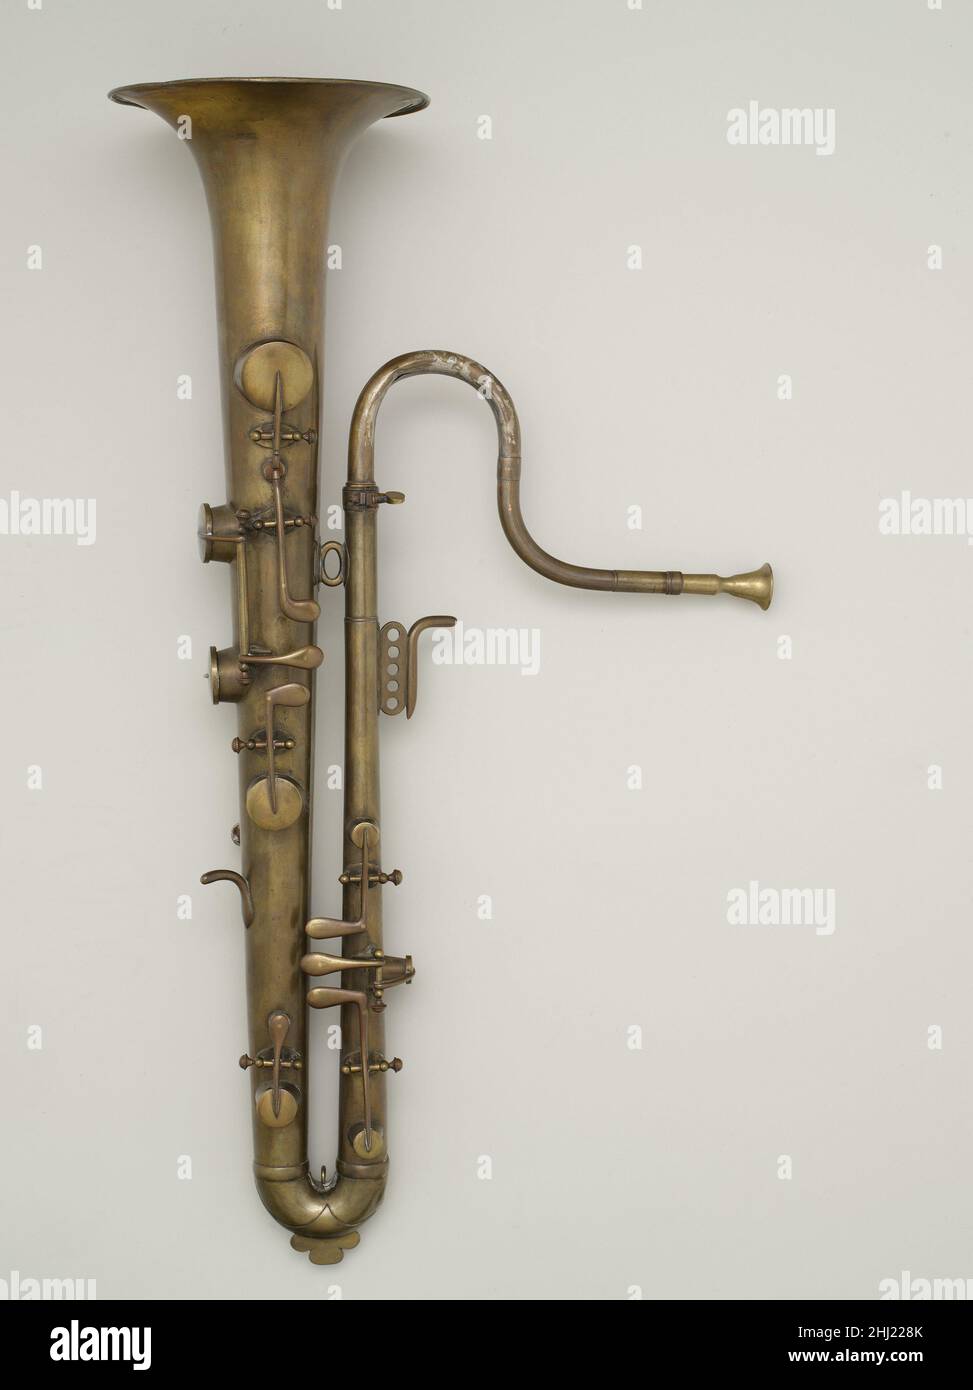 Soprano Ophicleide in B-flat metà del 19th secolo Adolphe (Antoine Joseph) Sax Belga, Francia attiva l'ophicleide è un basso istumento di ottone che è stato utilizzato in bande e orchestre durante il XIX secolo. È stato sostituito dal tuba.in cercando di creare uno strumento a vento di legno alto e basso, Adolphe Sax sperimentò con mettere un boccaglio di clarinetto basso su un opicleide. Questa idea ha generato il primo sassofono. Opicleide soprano in B-flat. Francese. Metà del 19th secolo. Ottone. Francia. Aerophone-labbro vibrato Foto Stock